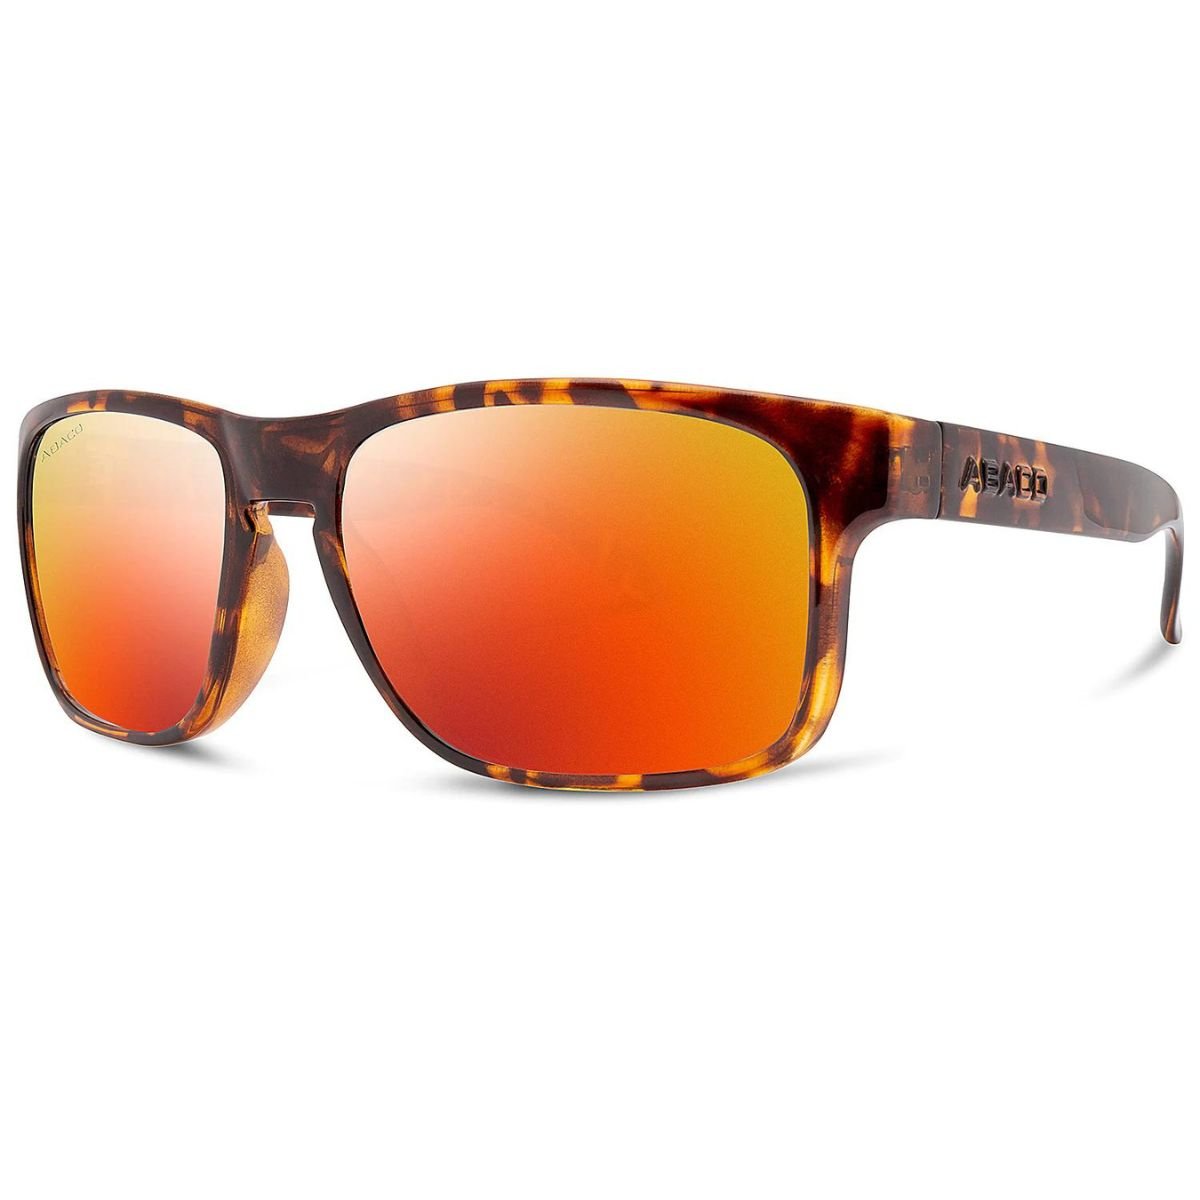 Abaco Dockside Sunglasses in Tortoise/Fire - BoardCo